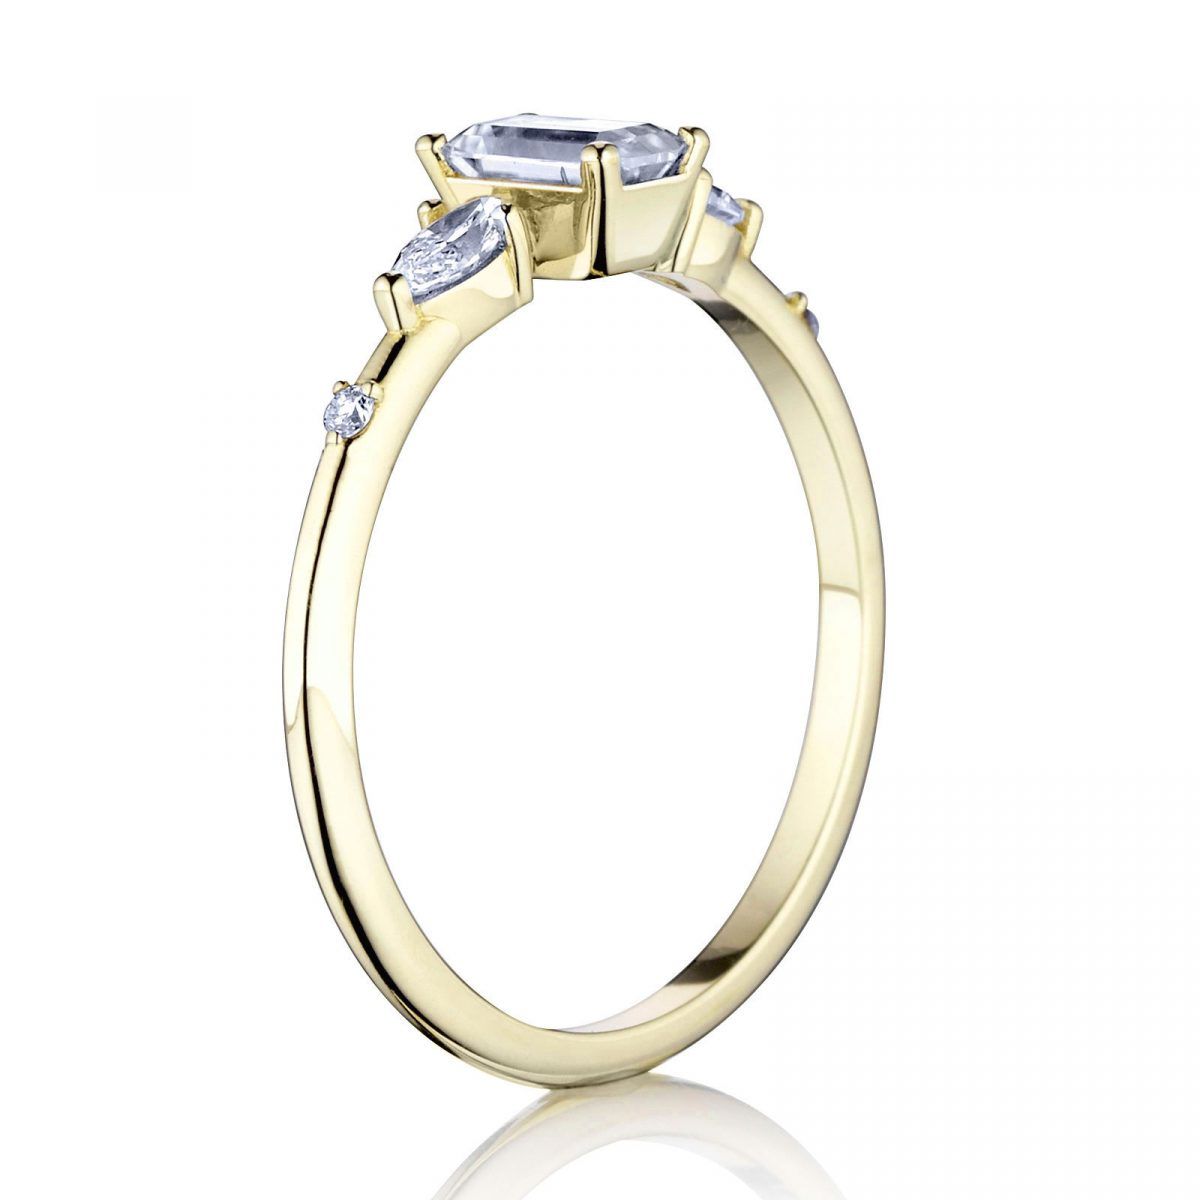 Prsteň Zora - žlté zlato s prírodným diamantom